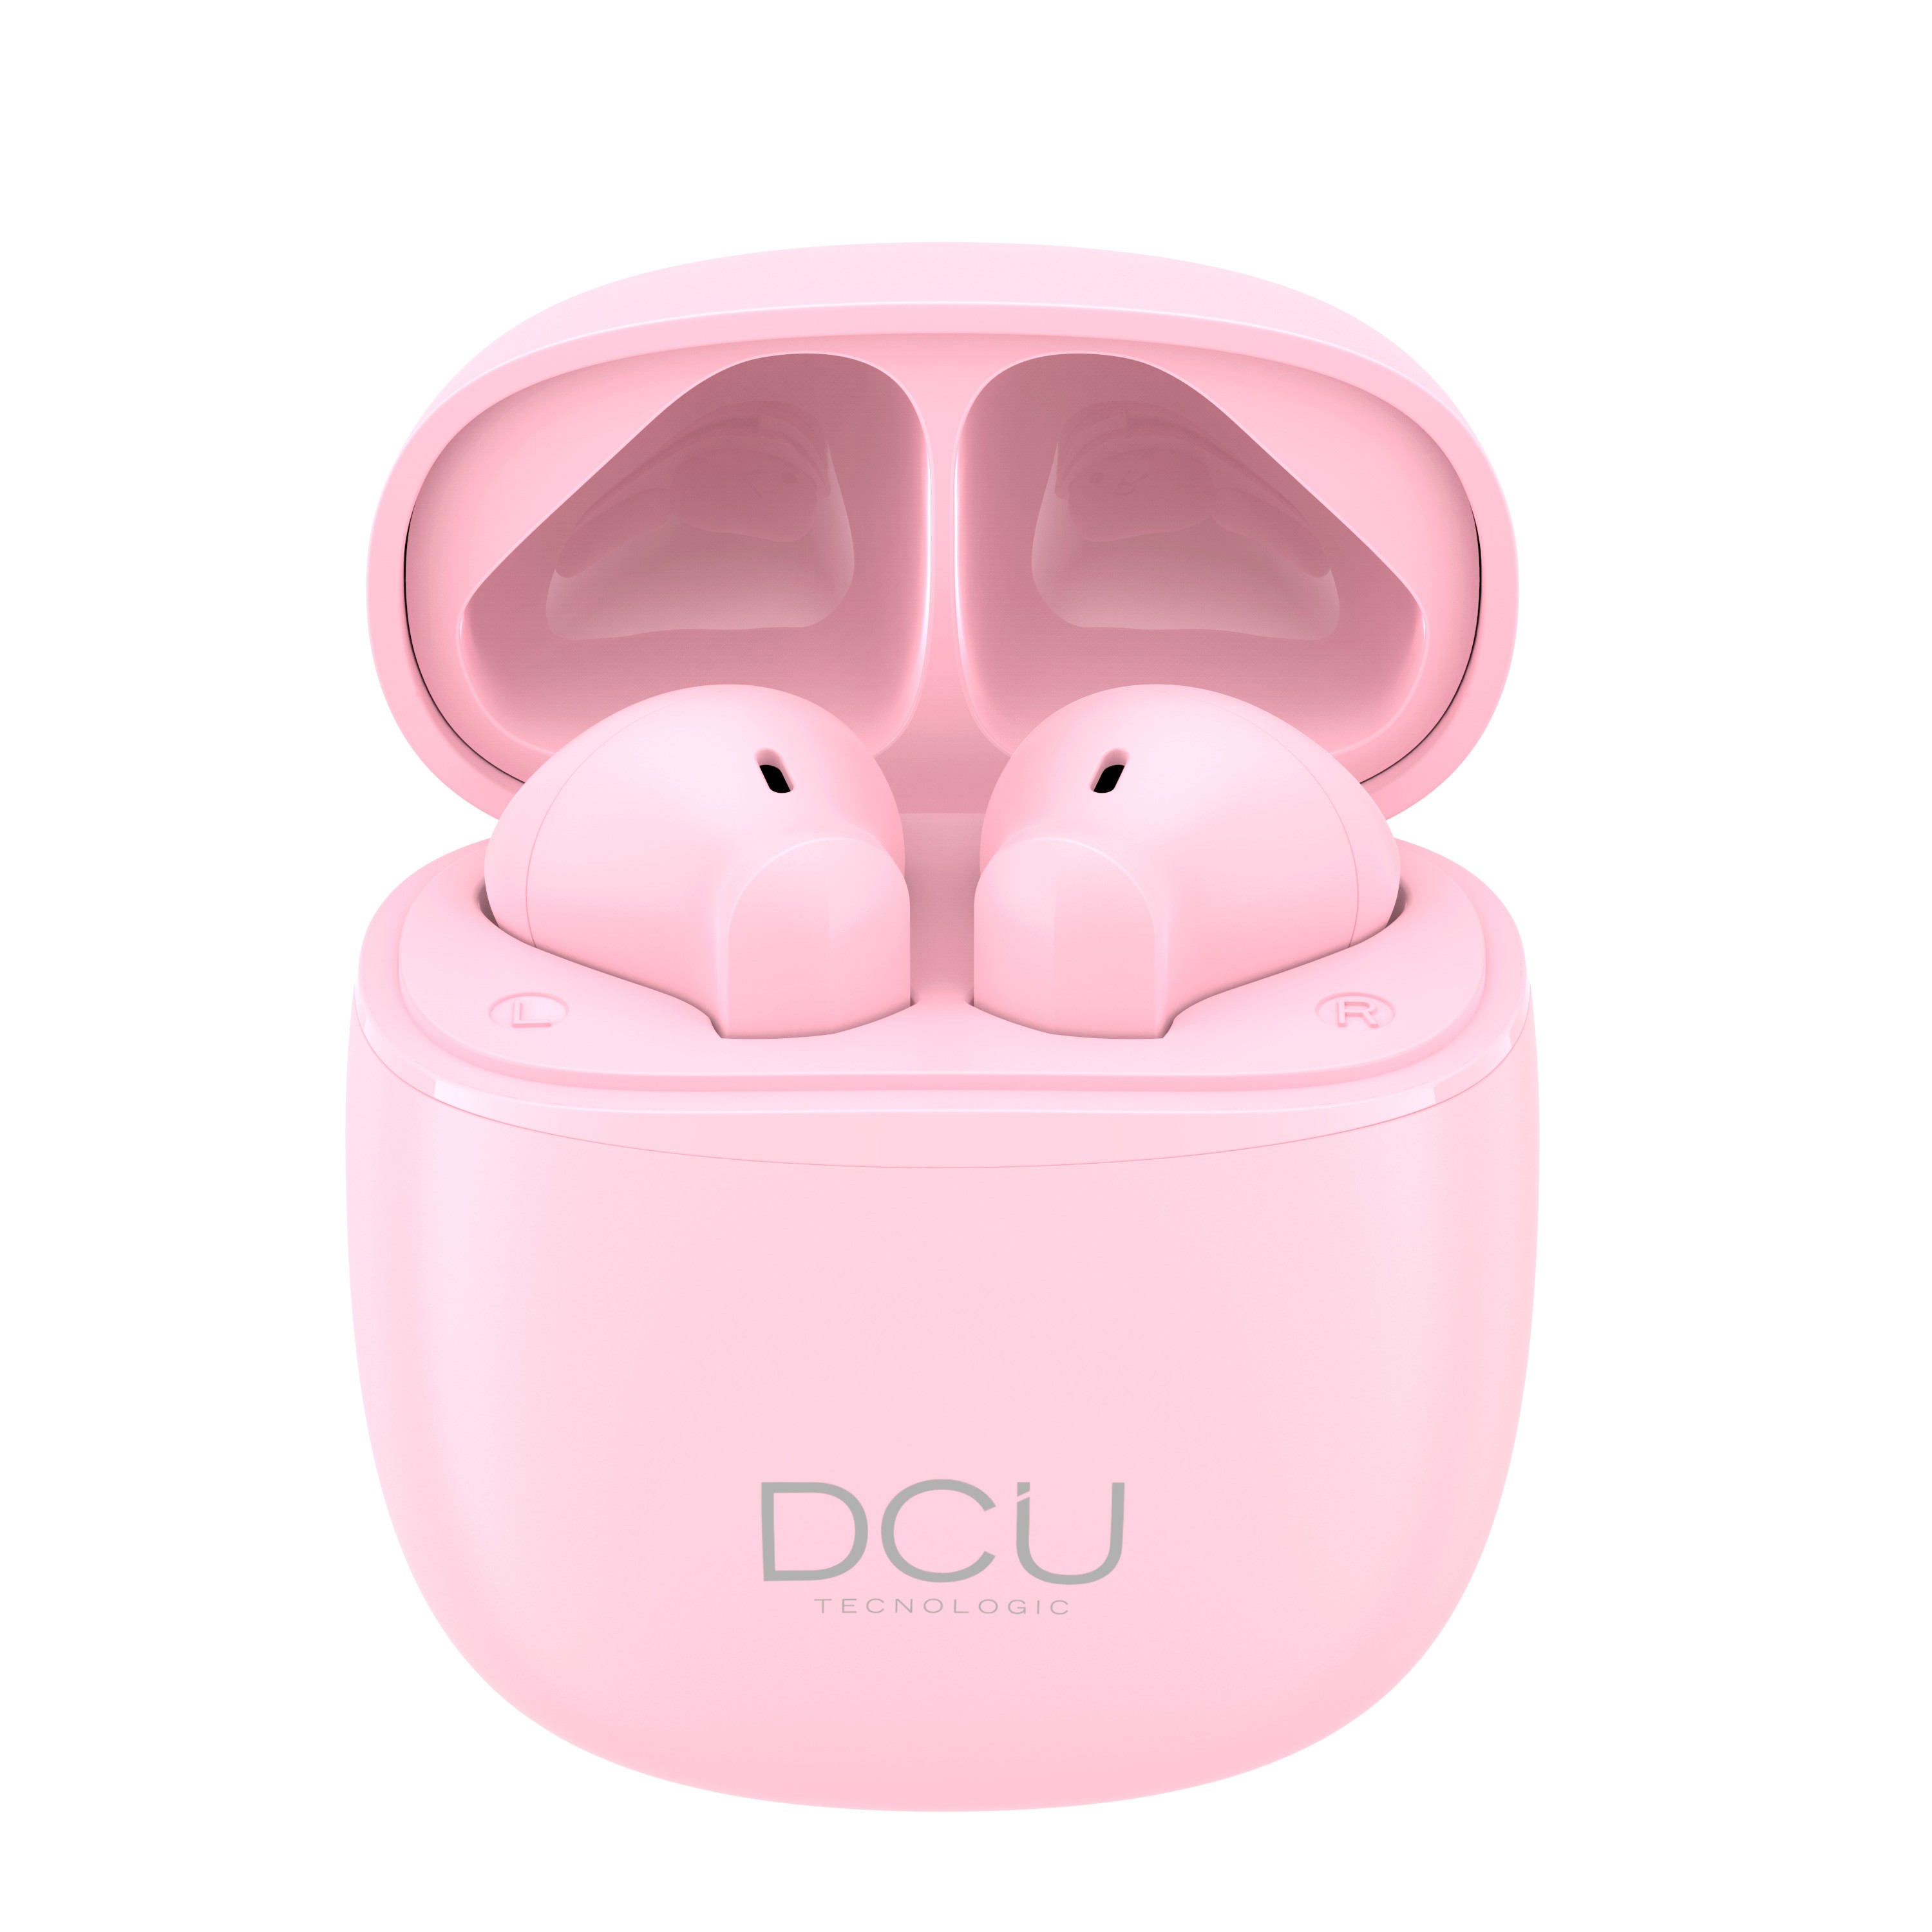 Casque Bluetooth 5.1 DCU Tecnologic Mini Mate - Liberté et confort pour votre musique préférée - Version V5.1 - Batterie longue durée - Haut-parleur de haute qualité - Connexion stable jusqu'à 10 m - Couleur rose